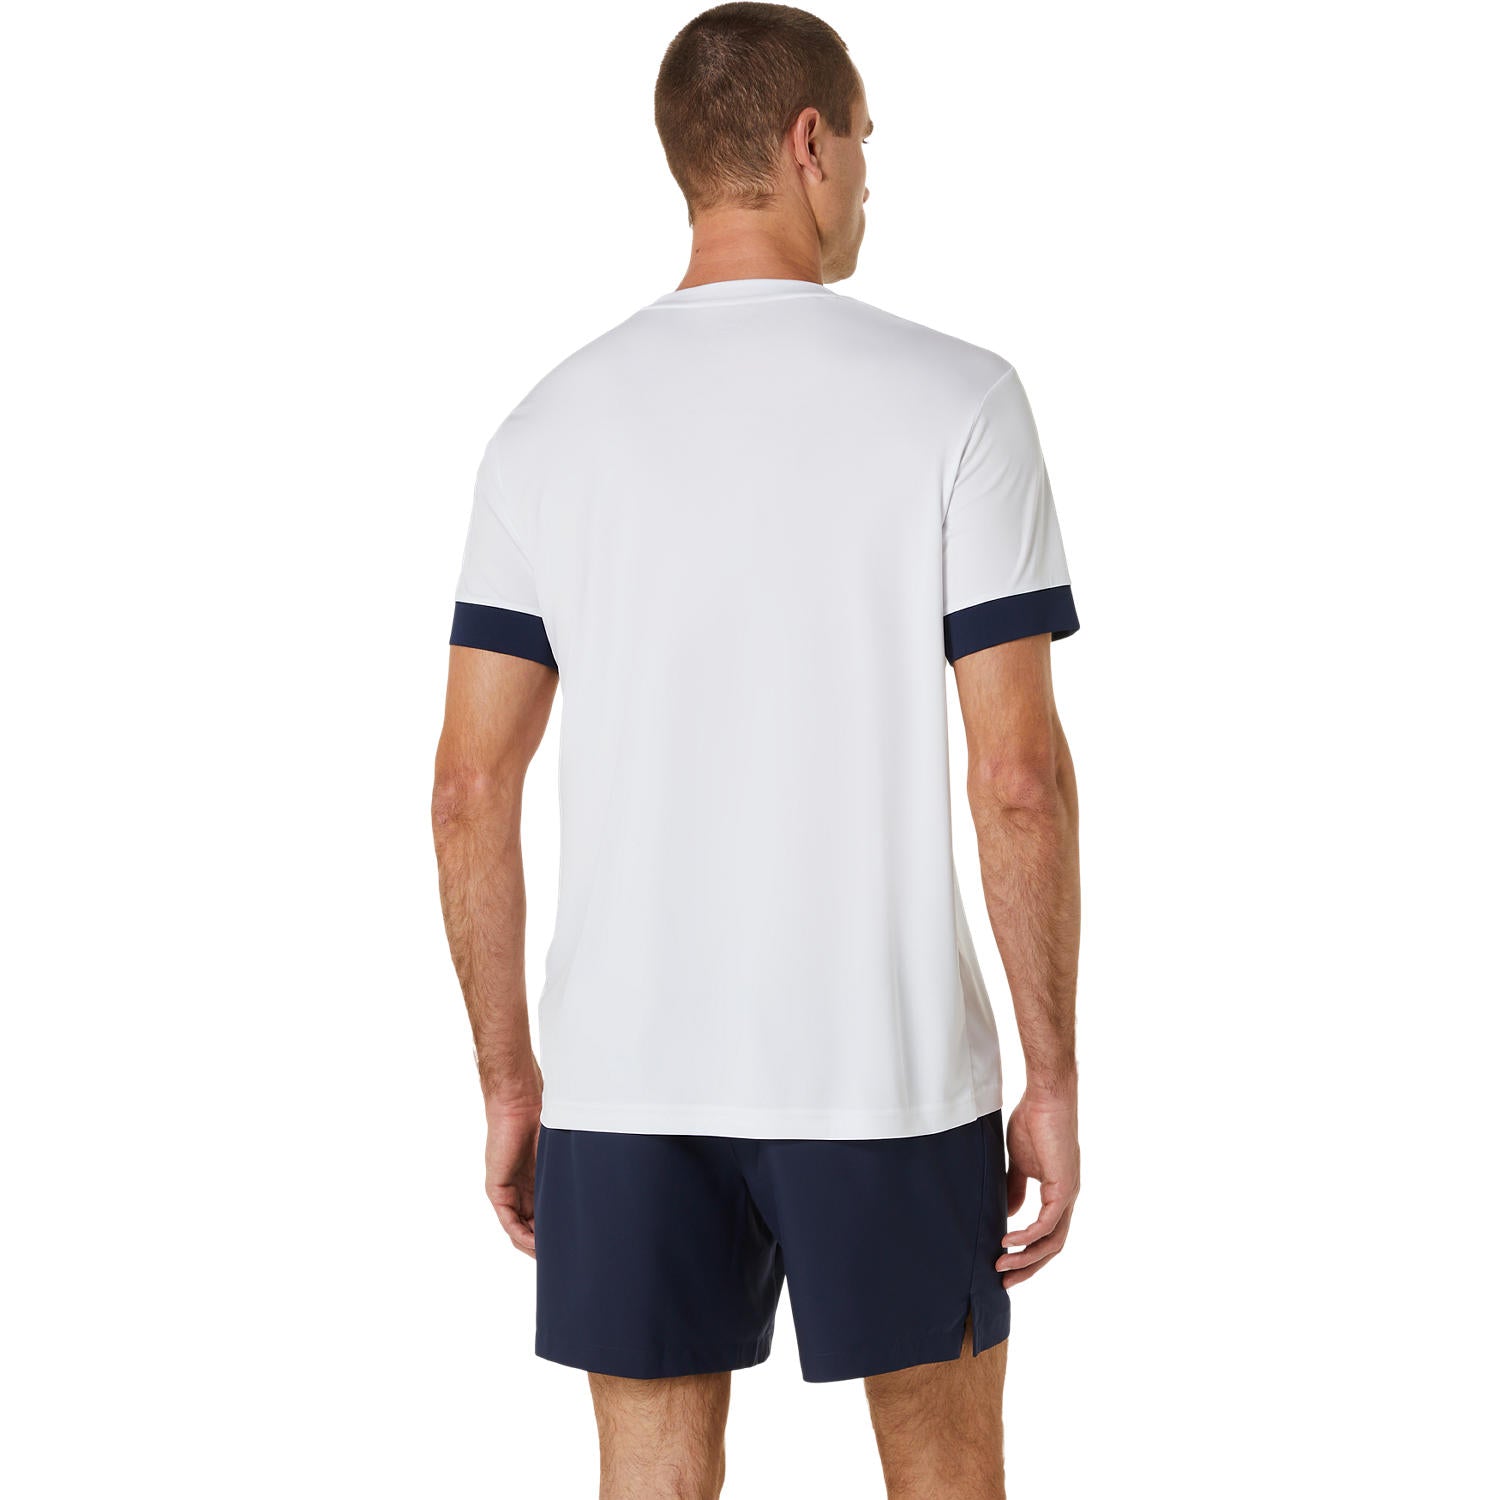 Mens Court Tennis Short Sleeve T-shirt